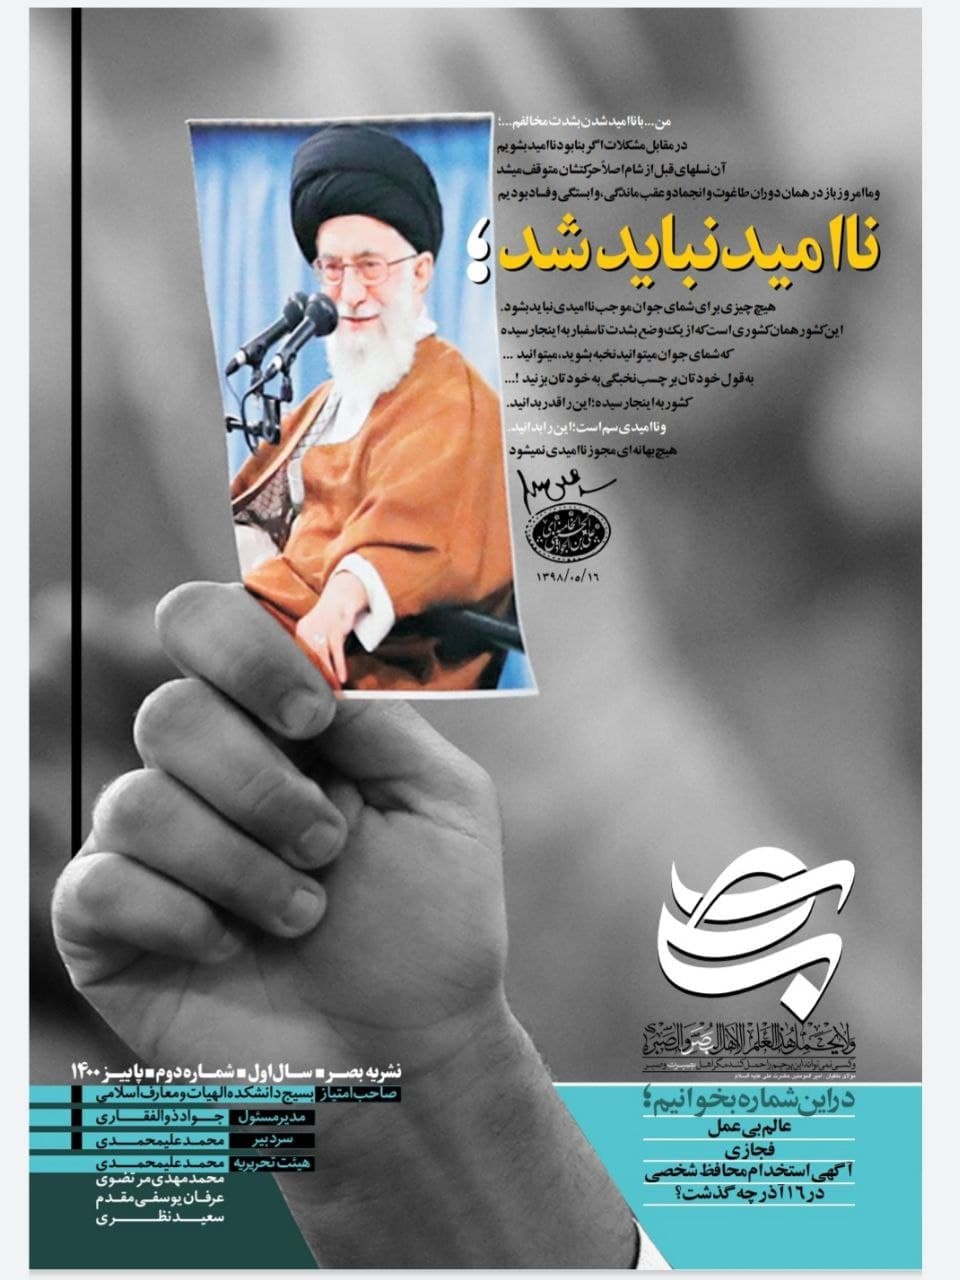 شماره دوم نشریه «بصیر» بسیج دانشکده الهیات و معارف اسلامی منتشر شد.